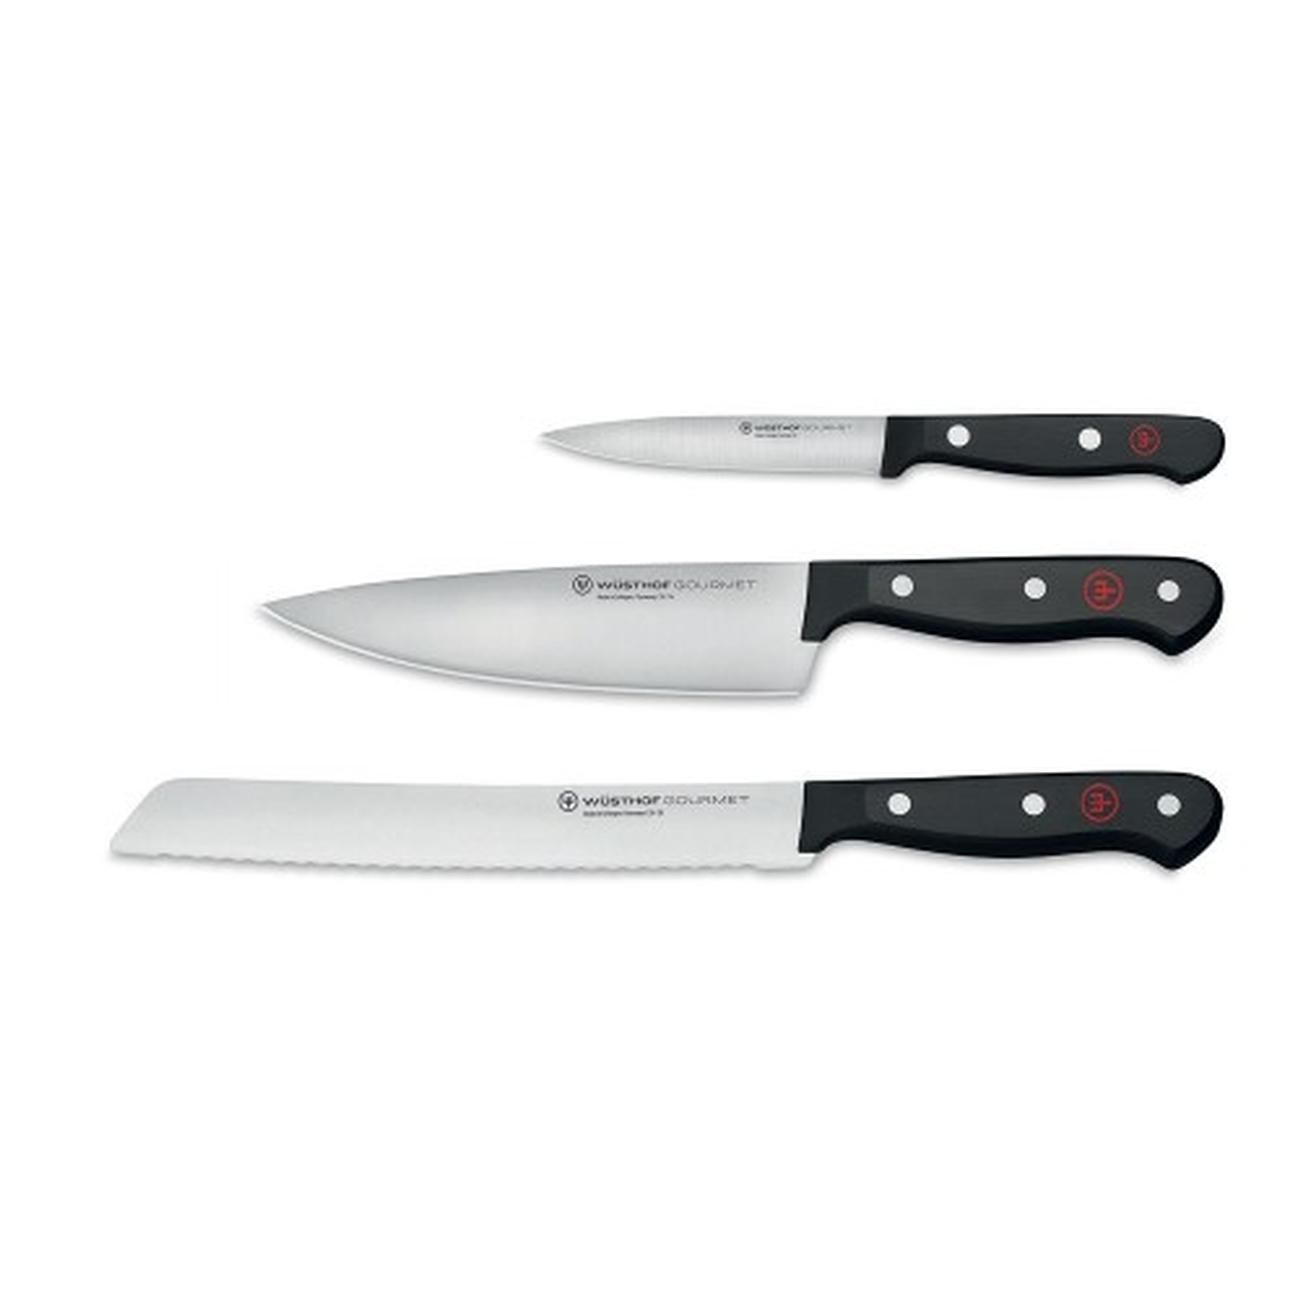 wusthof-gourmet-3pc-knife-set-promo - Wusthof Gourmet 3-piece Knife Set